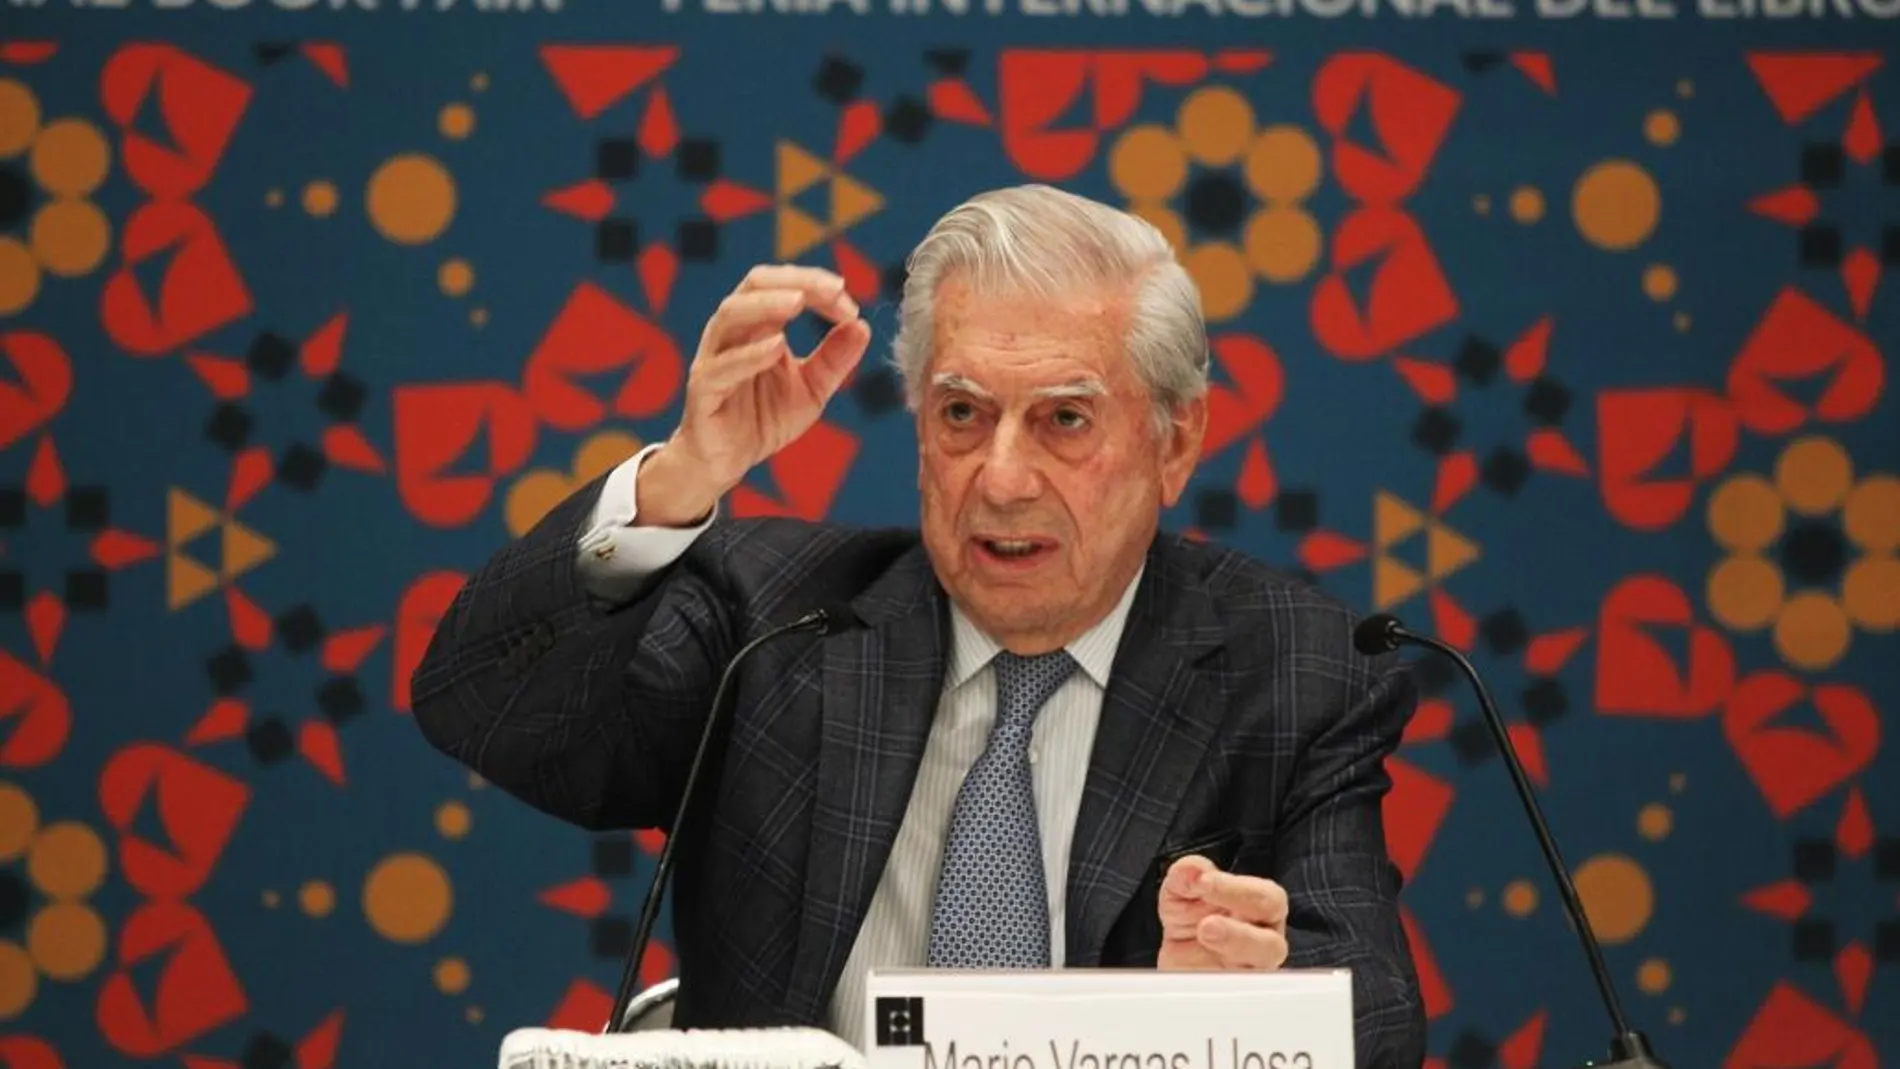 El escritor peruano Mario Vargas Llosa presenta su libro "Cinco Esquinas"durante la Feria Internacional del Libro de Guadalajara (FIL) (México)